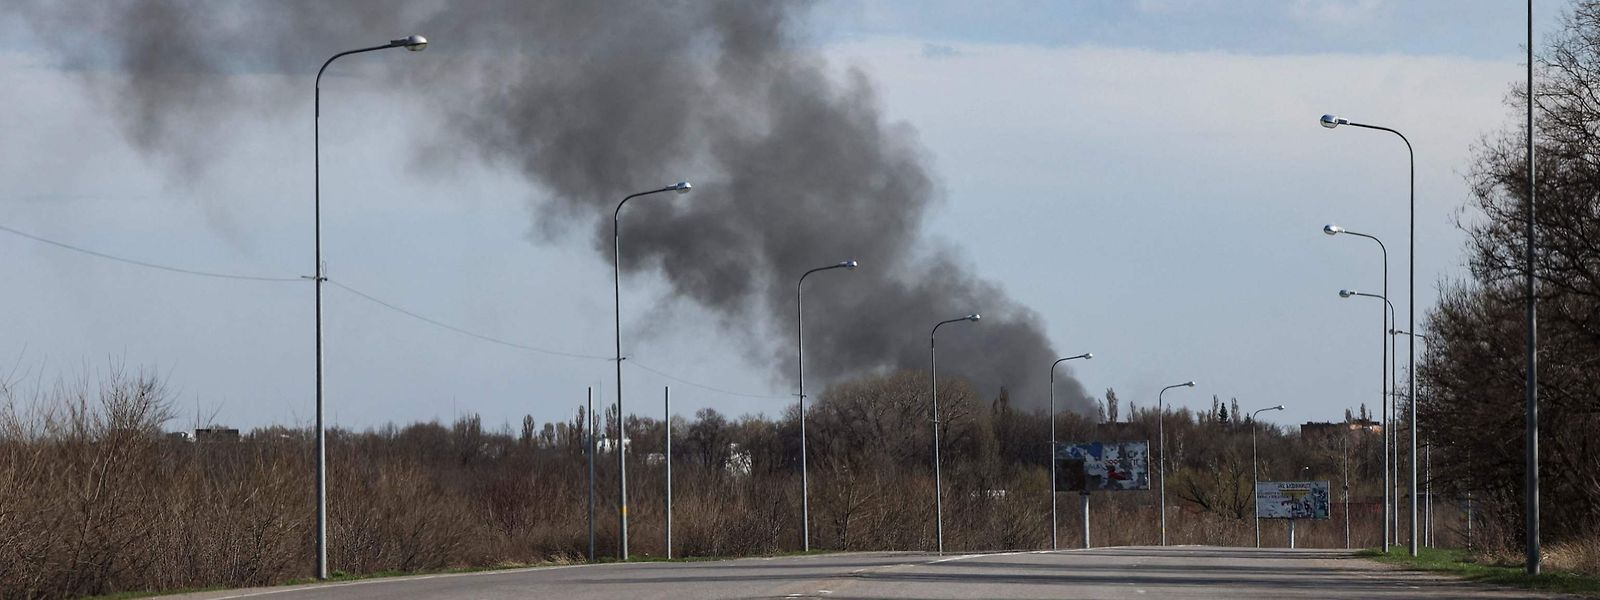 O aeroporto de Dnipro já tinha sido atingido a 15 de março por um bombardeamento russo, tendo a pista de aterragem sido destruída e o terminal danificado.